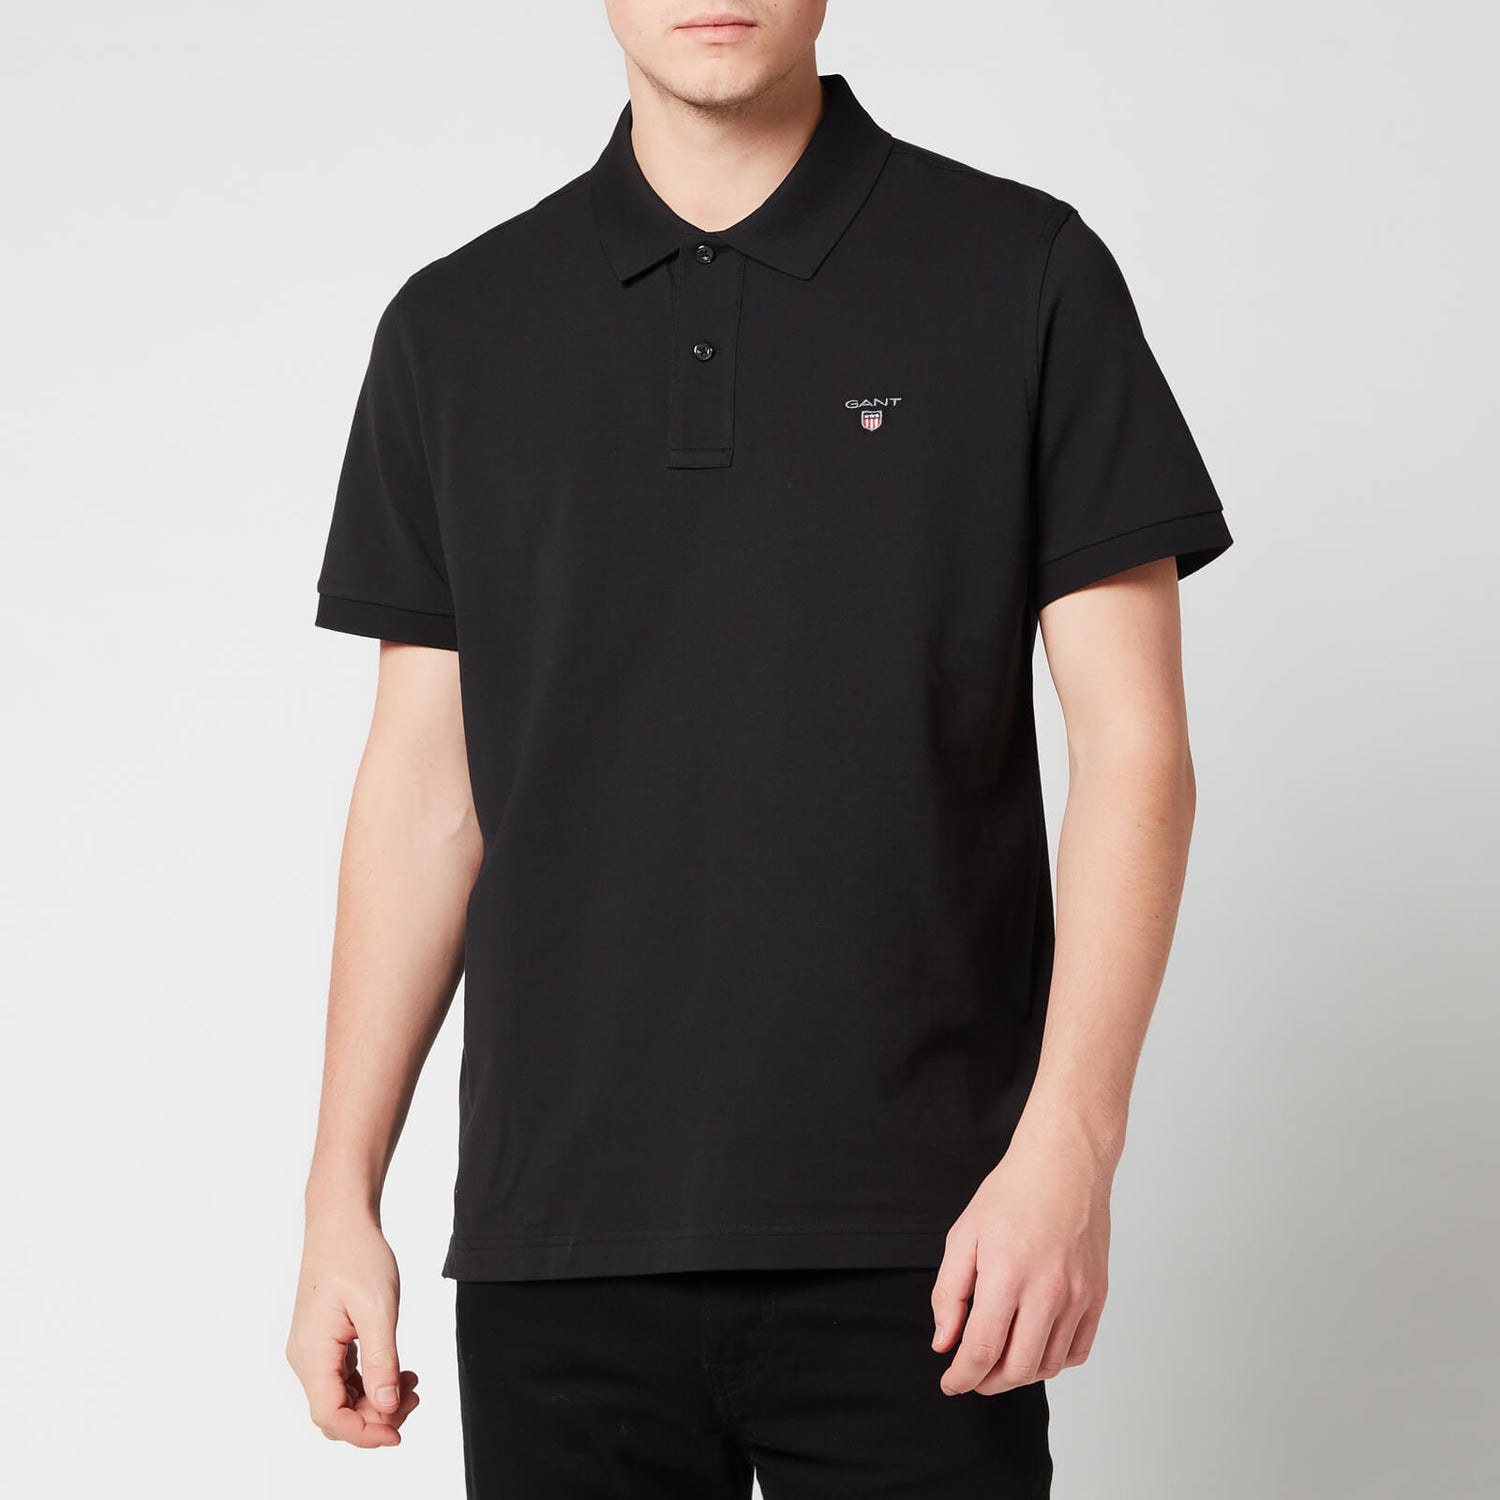 GANT Men's Original Pique Polo Shirt - Black